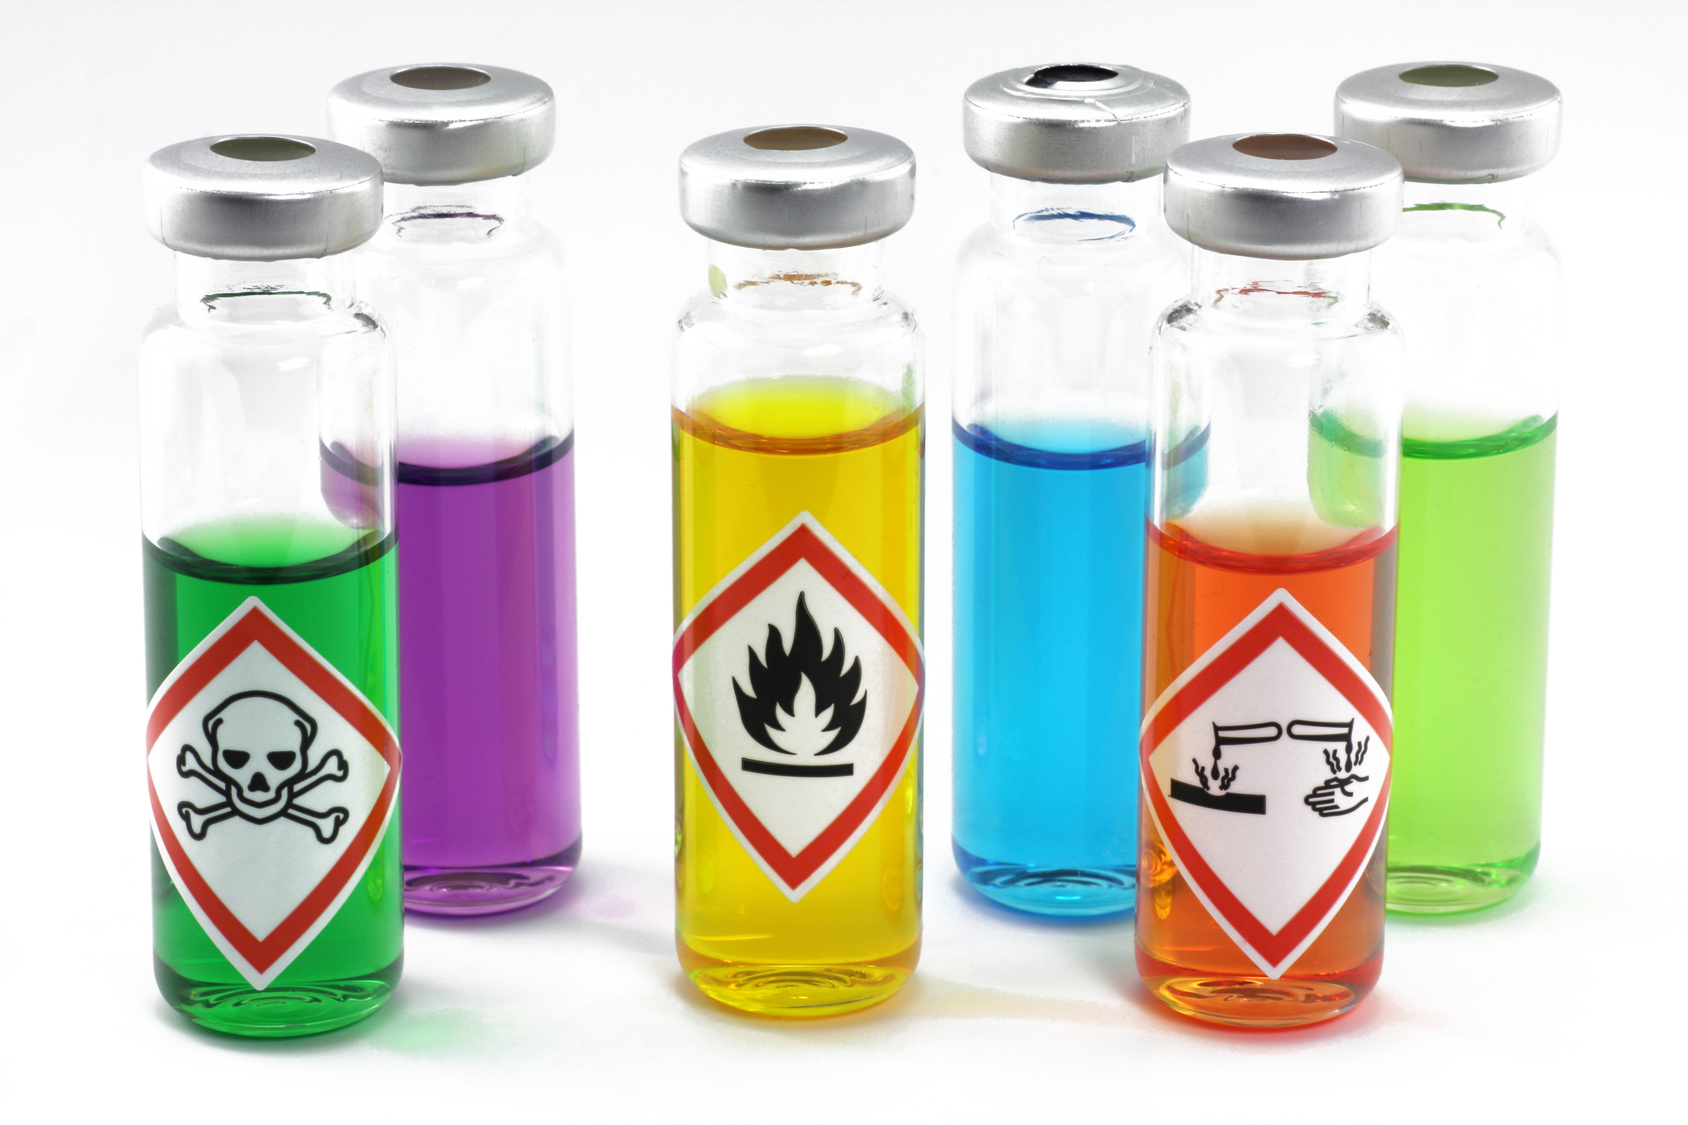 Agents chimiques dangereux